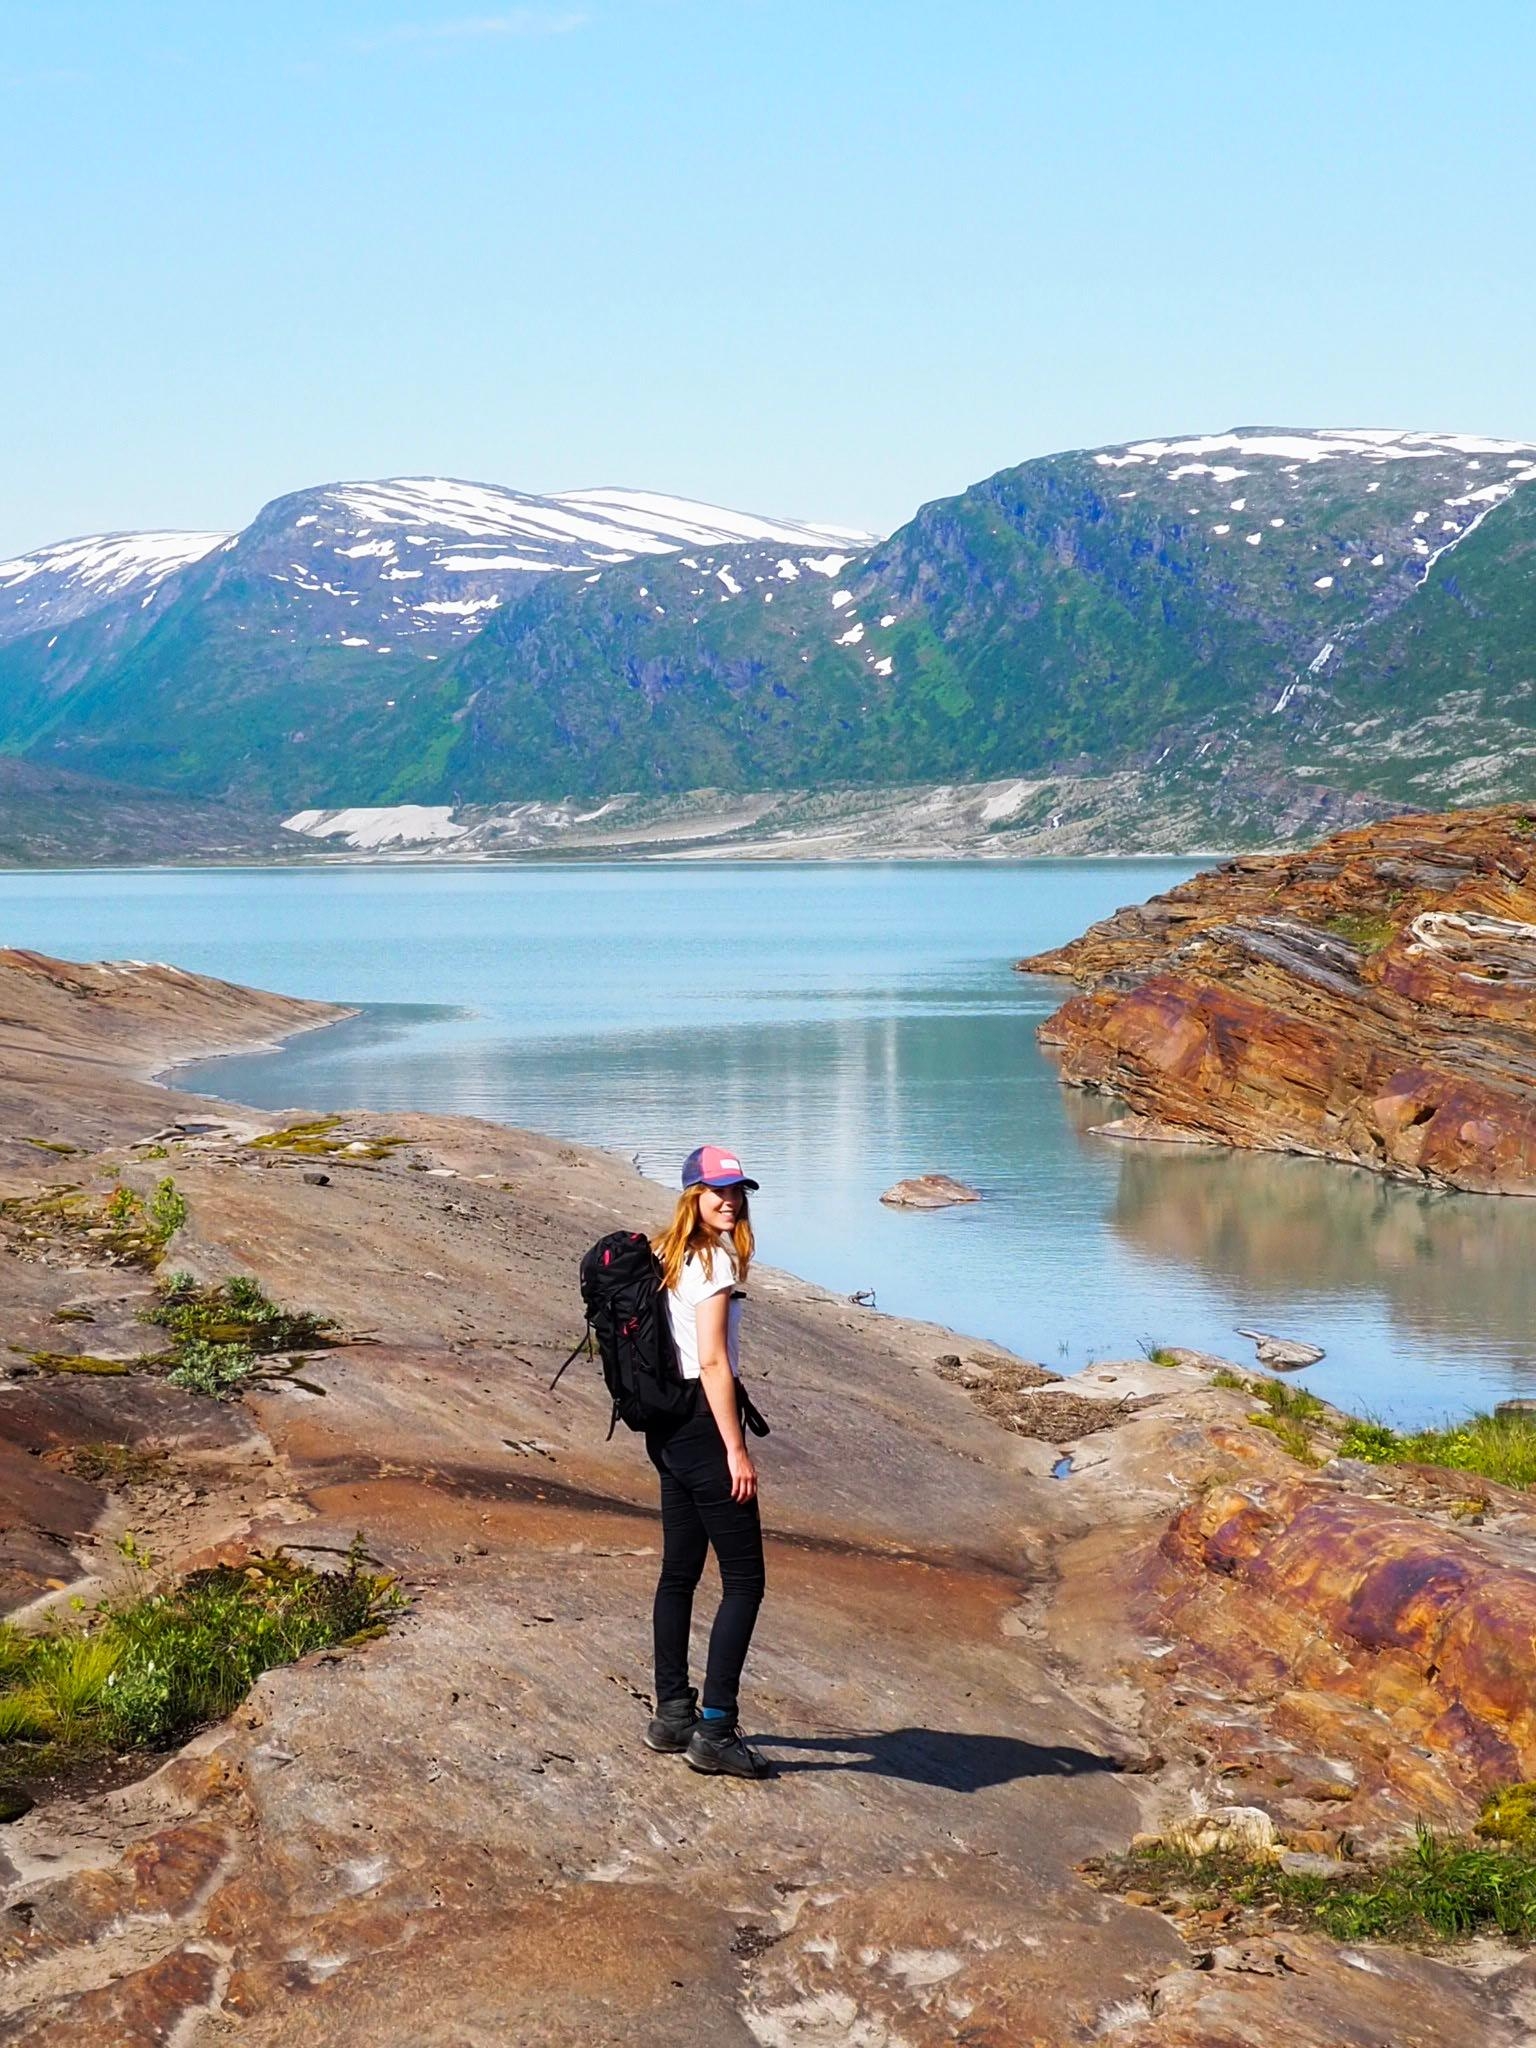 Und noch eins, weil es hier einfach zu schön ist!🇳🇴 #urlaub #norwegen #skandinavien #travel #wanderung #outdoor